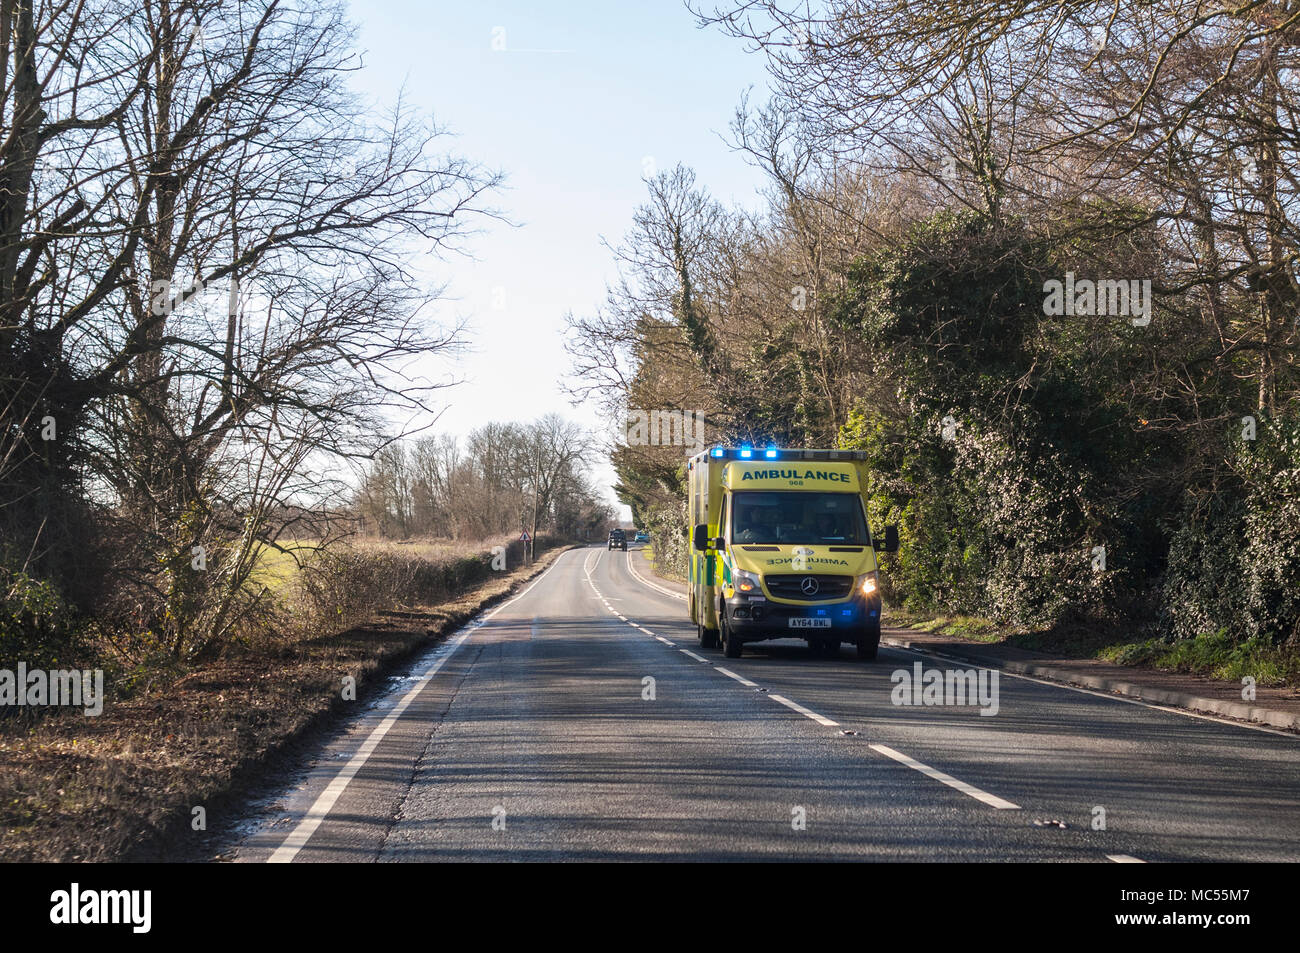 Une ambulance avec feux bleus clignotants sur une route principale à Norfolk , Angleterre , Royaume-Uni Banque D'Images